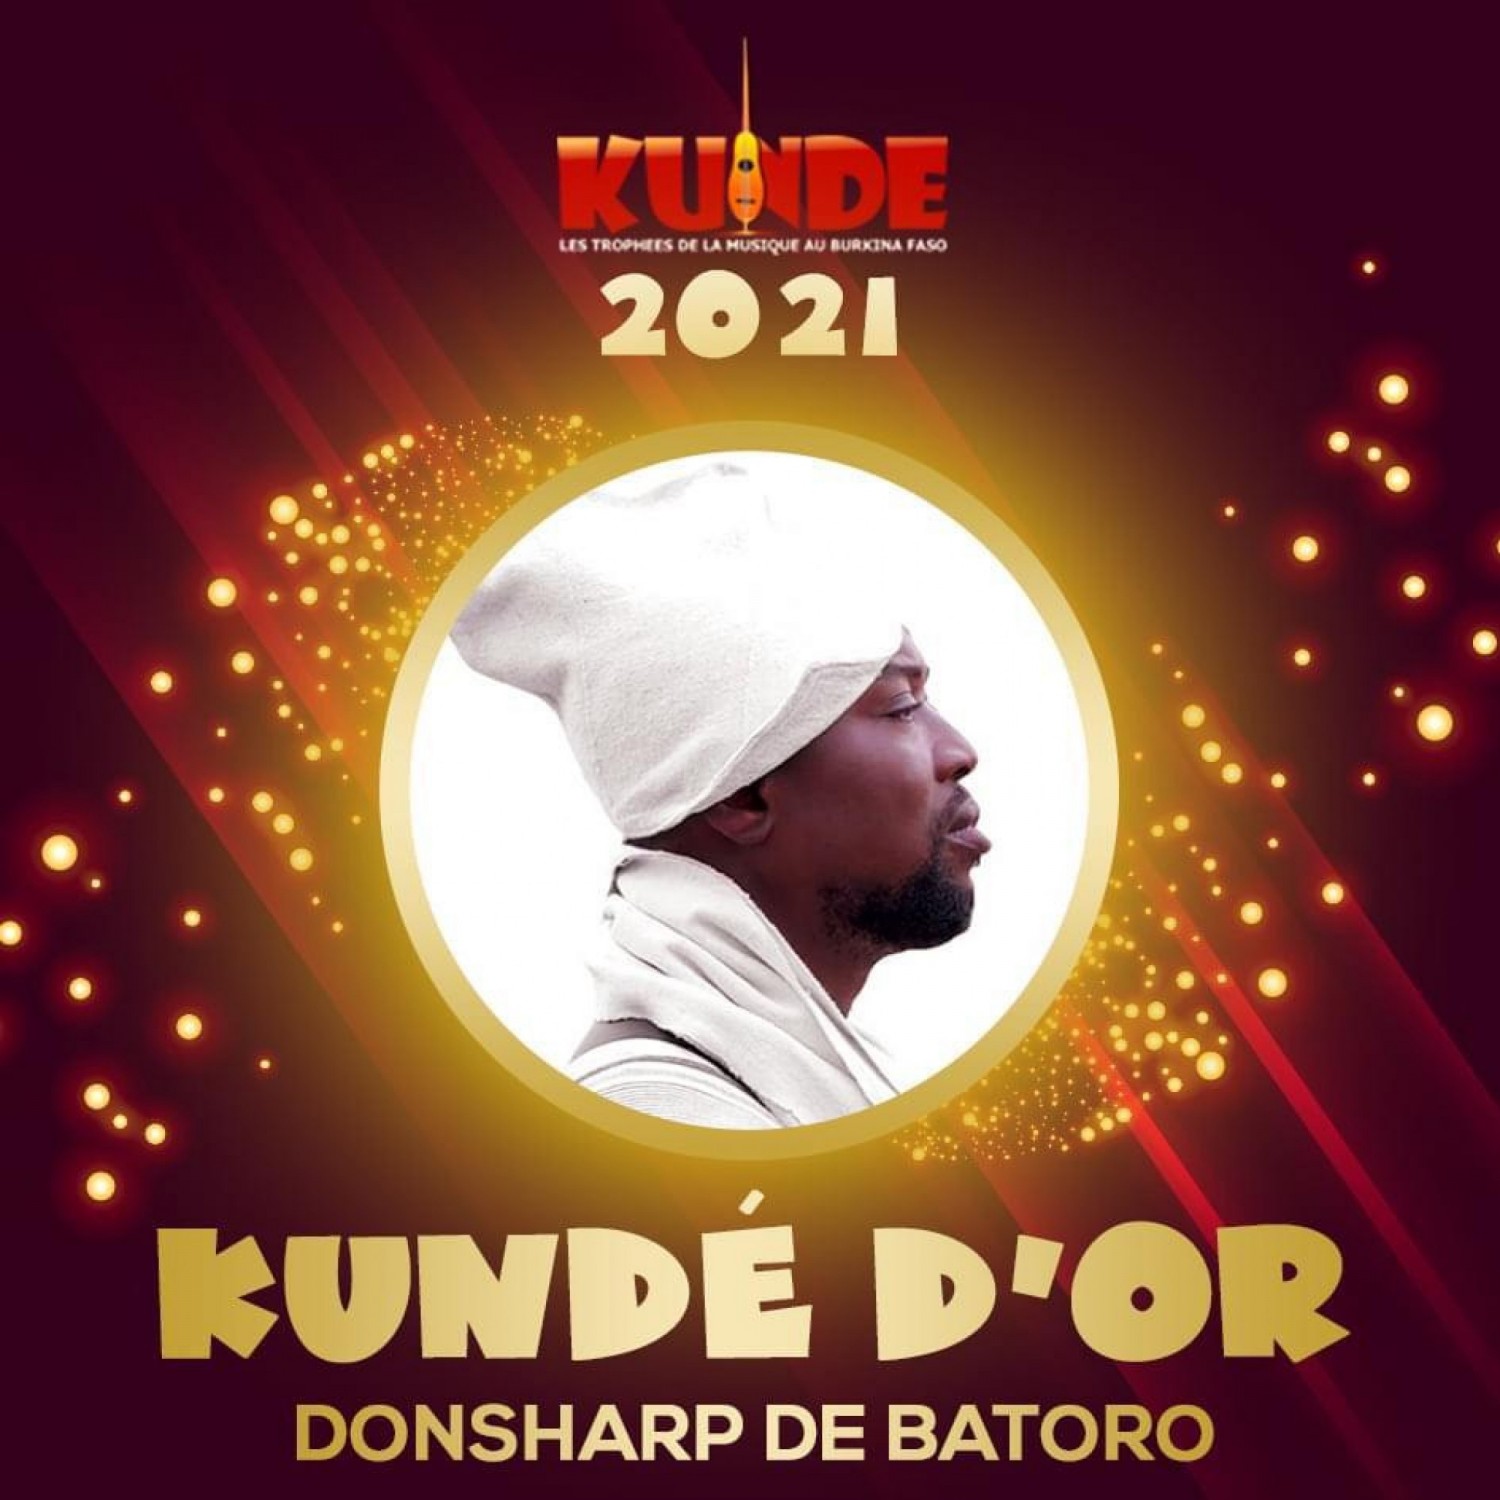 Burkina Faso : kundé d'or, l'artiste De Batoro lauréat du trophée du meilleur artiste